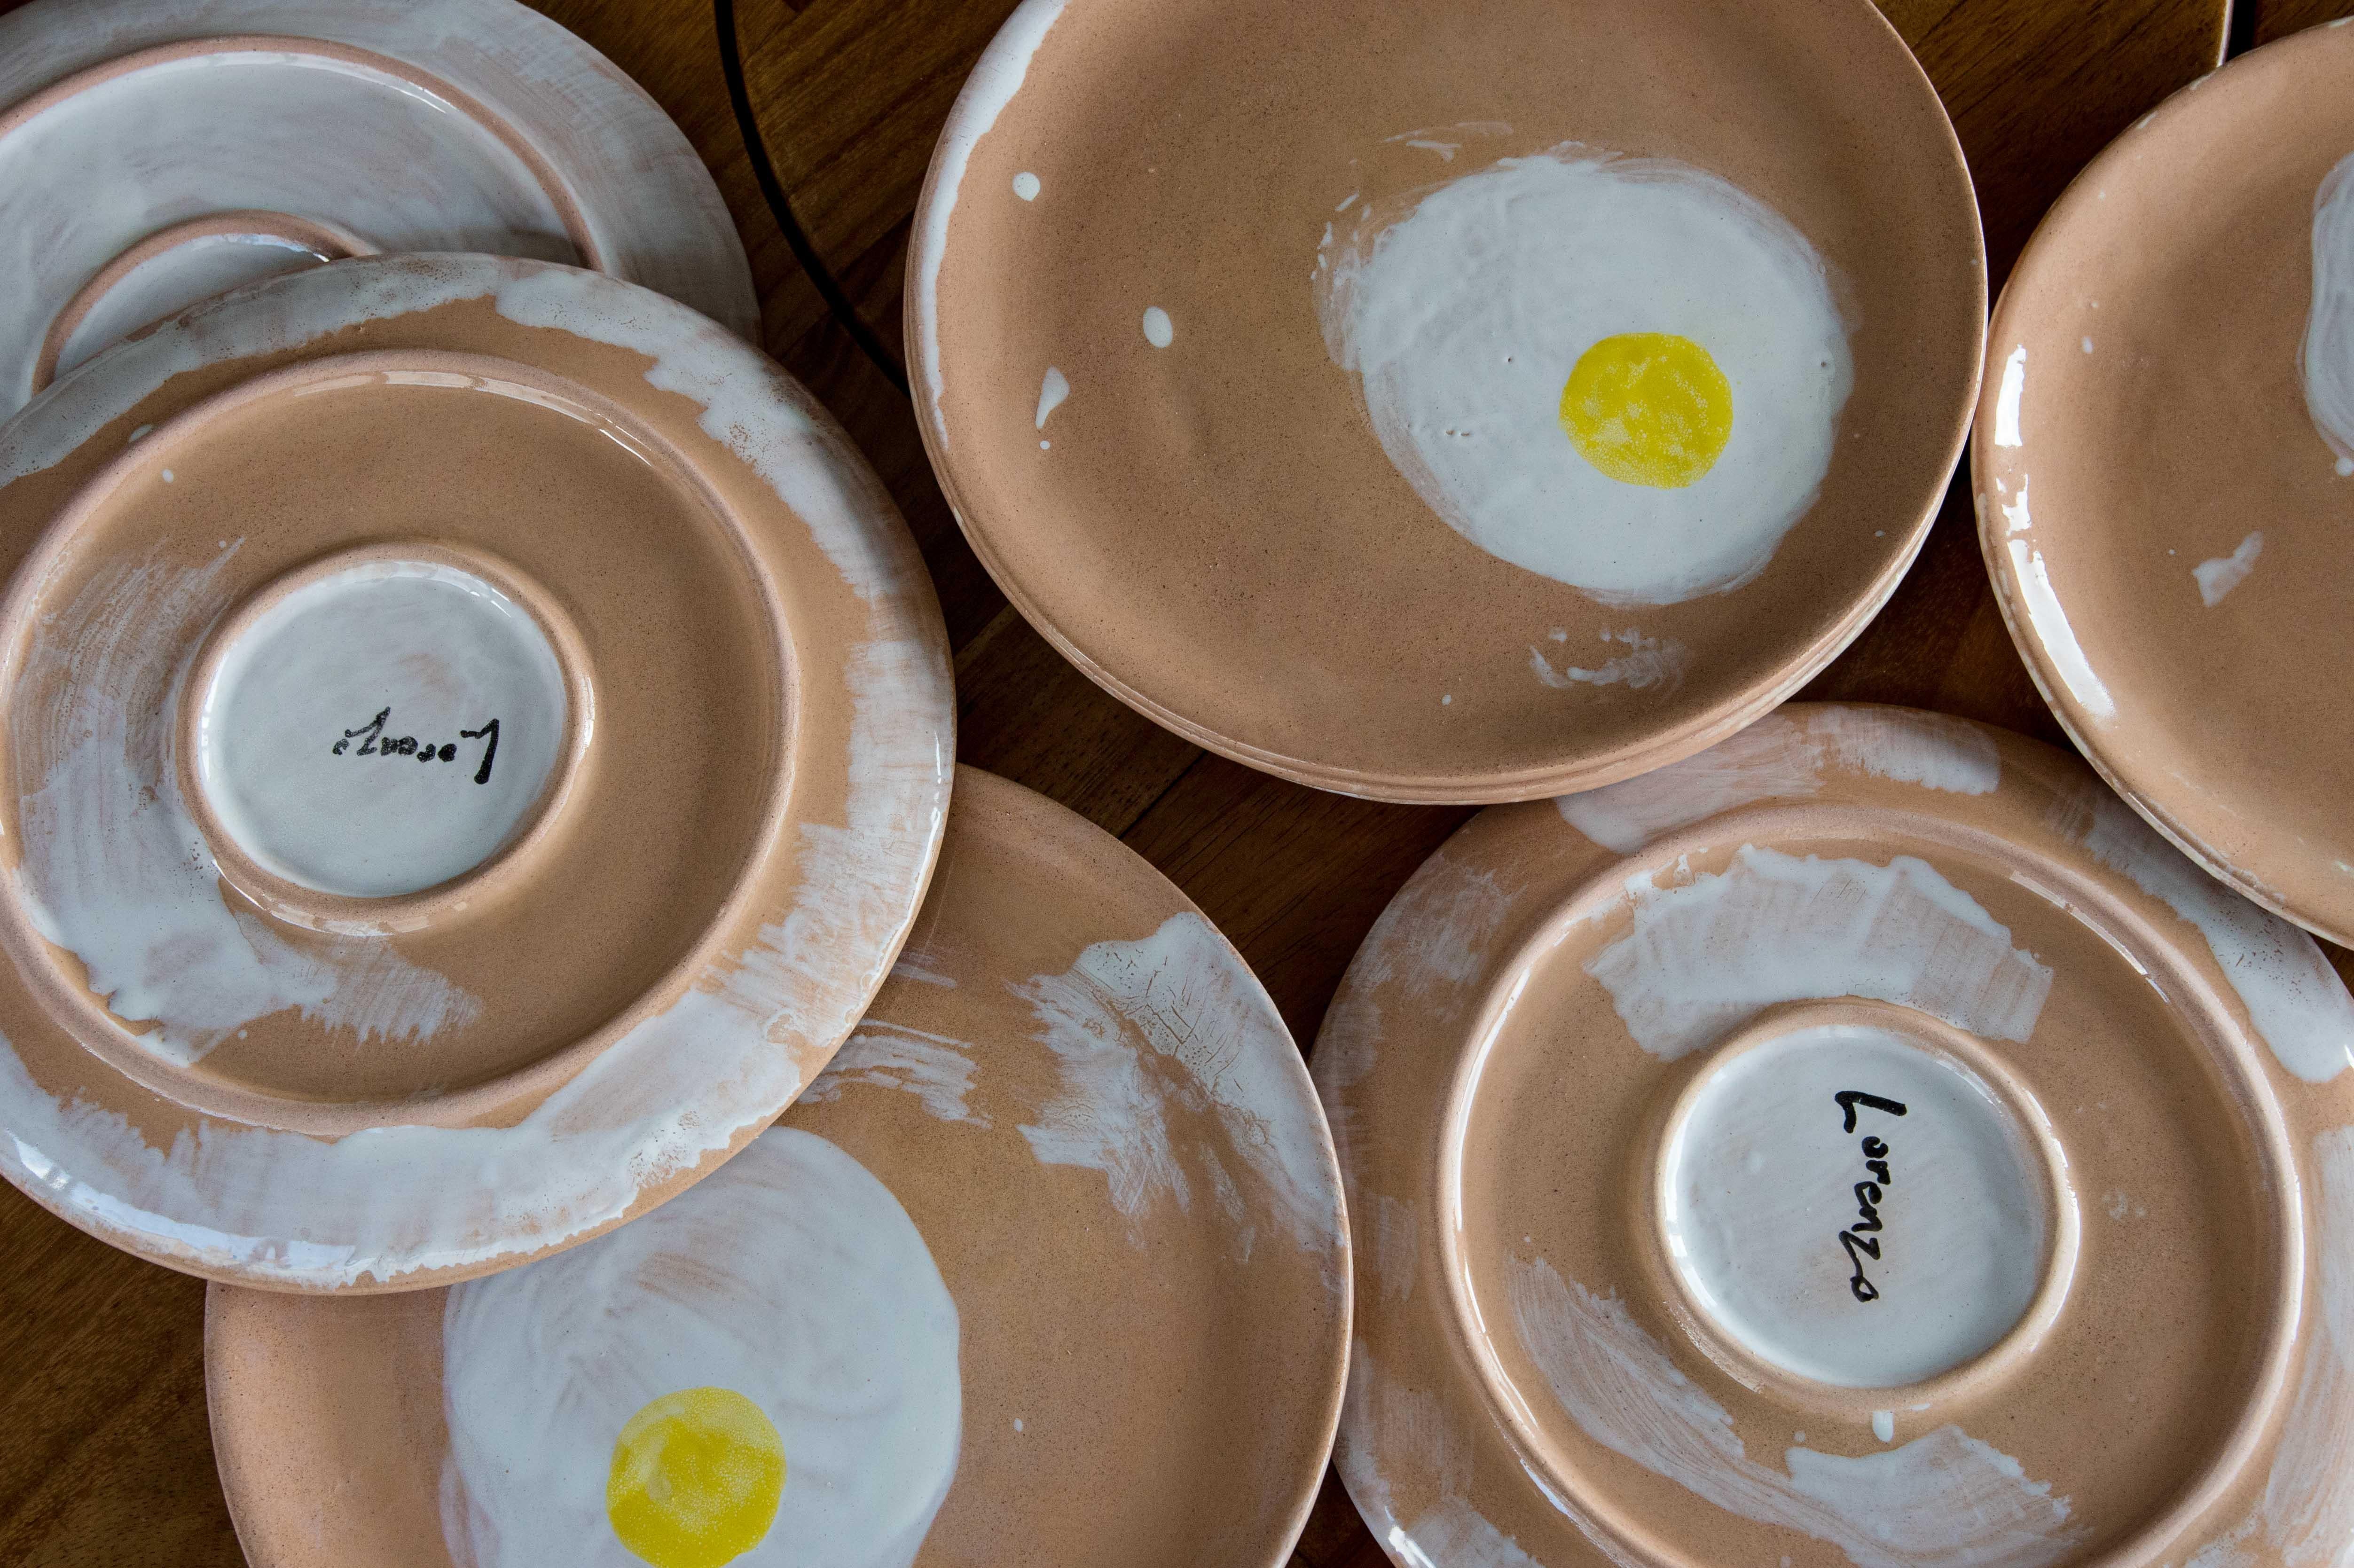 Assiette 8 en céramique au design moderne d'œuf par l'artiste Lorenzo Lorenzzo.

Le travail de Lorenzo fait allusion à son repas préféré, le petit-déjeuner, créant ainsi un design contemporain pour cette collection d'assiettes.